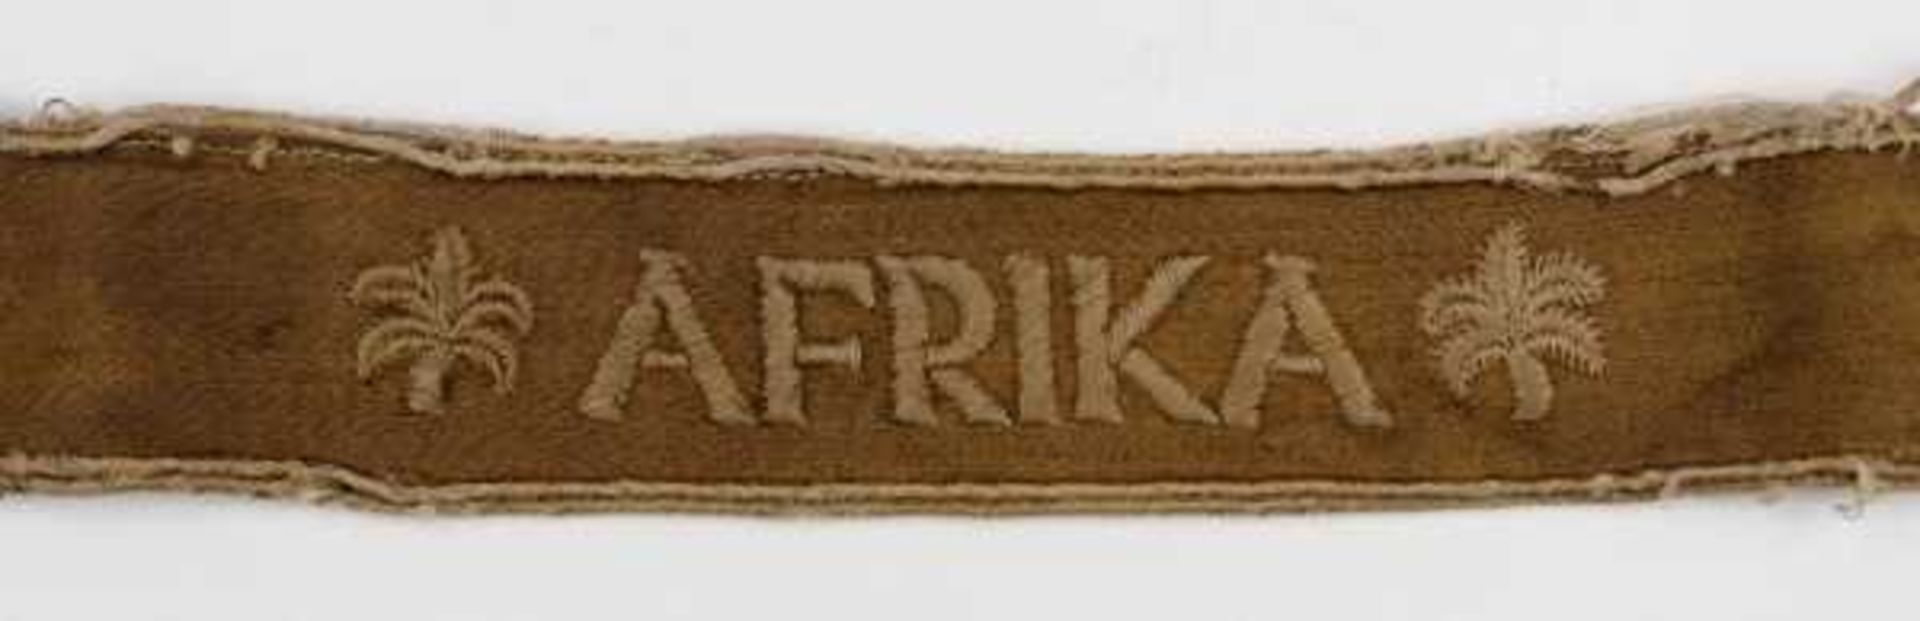 1.2.) Deutsches Reich (1933-45) Ärmelband "AFRIKA".Sogenannte Kamelhaarausführung, sehr stark